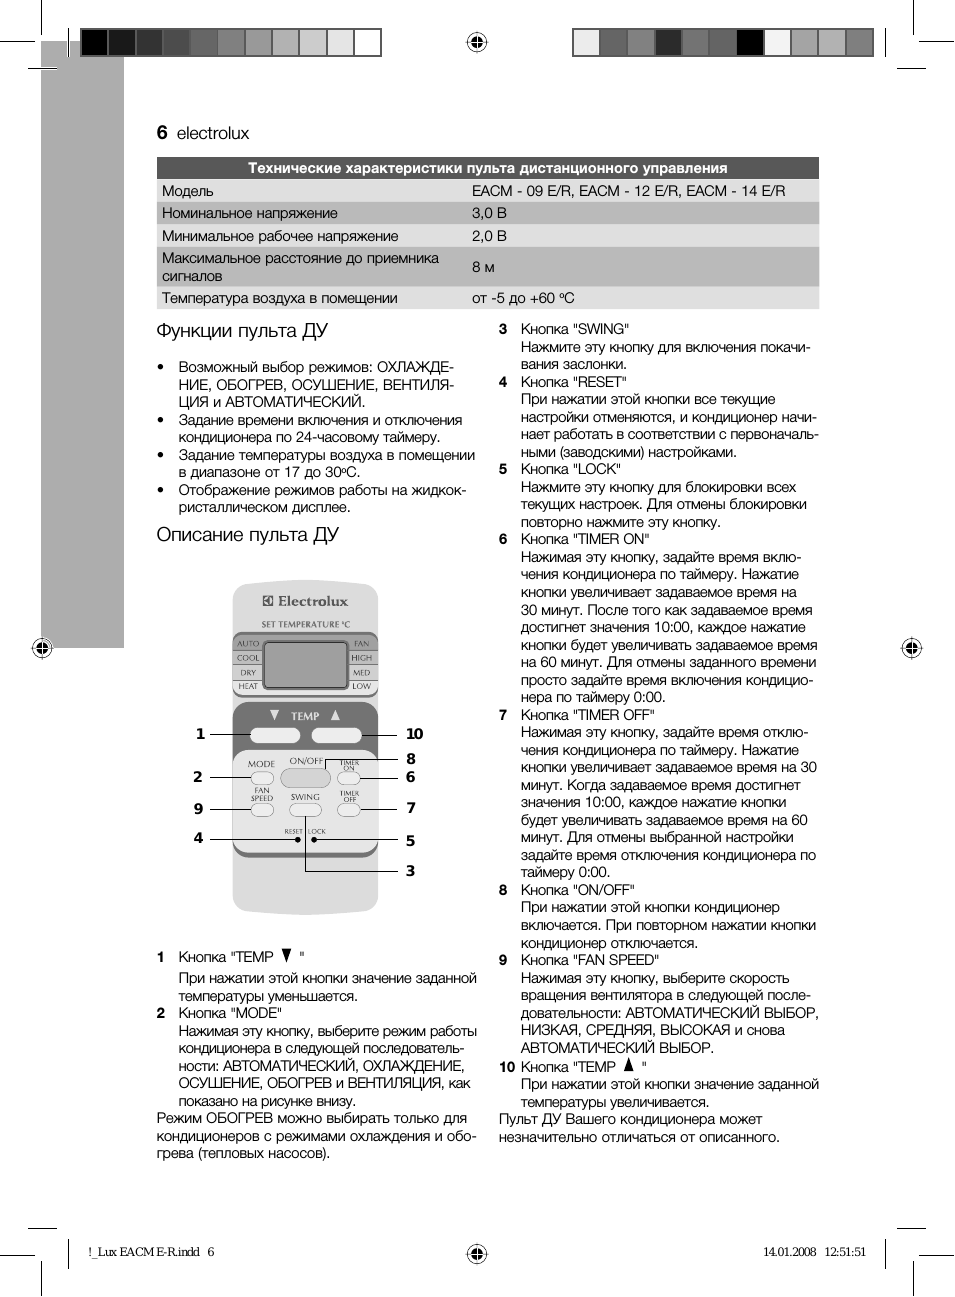 Обзор напольных и других моделей кондиционеров electrolux, пульты управления и инструкции к ним